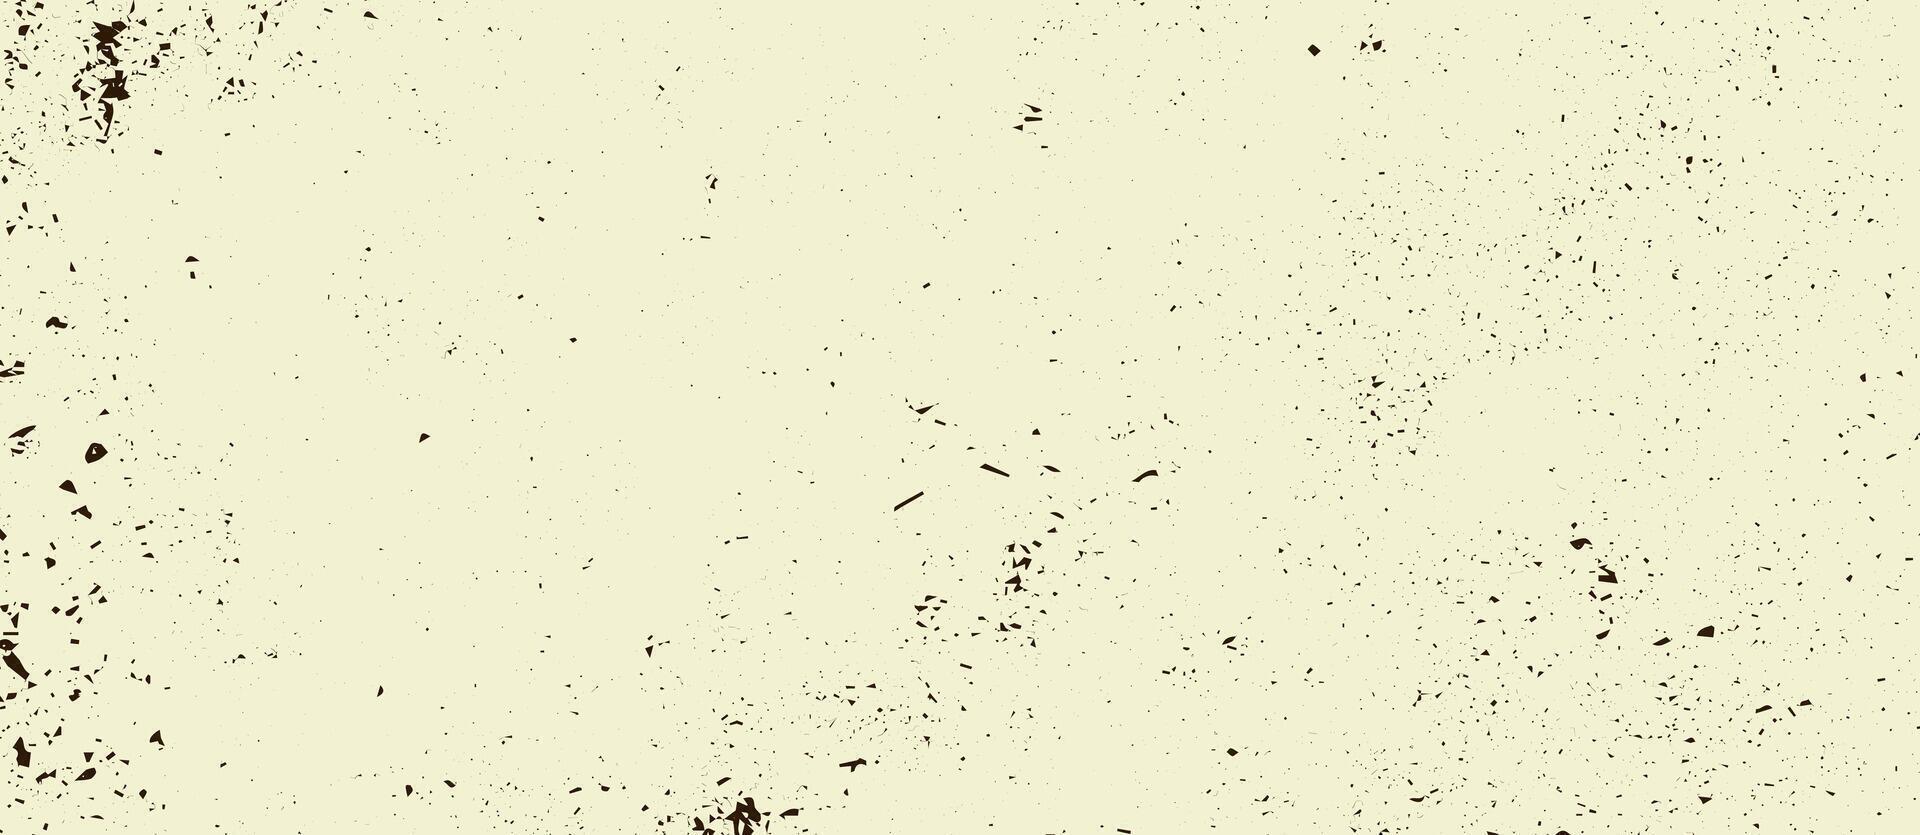 grunge papper textur med fläckar och partiklar. årgång bakgrund. illustration vektor